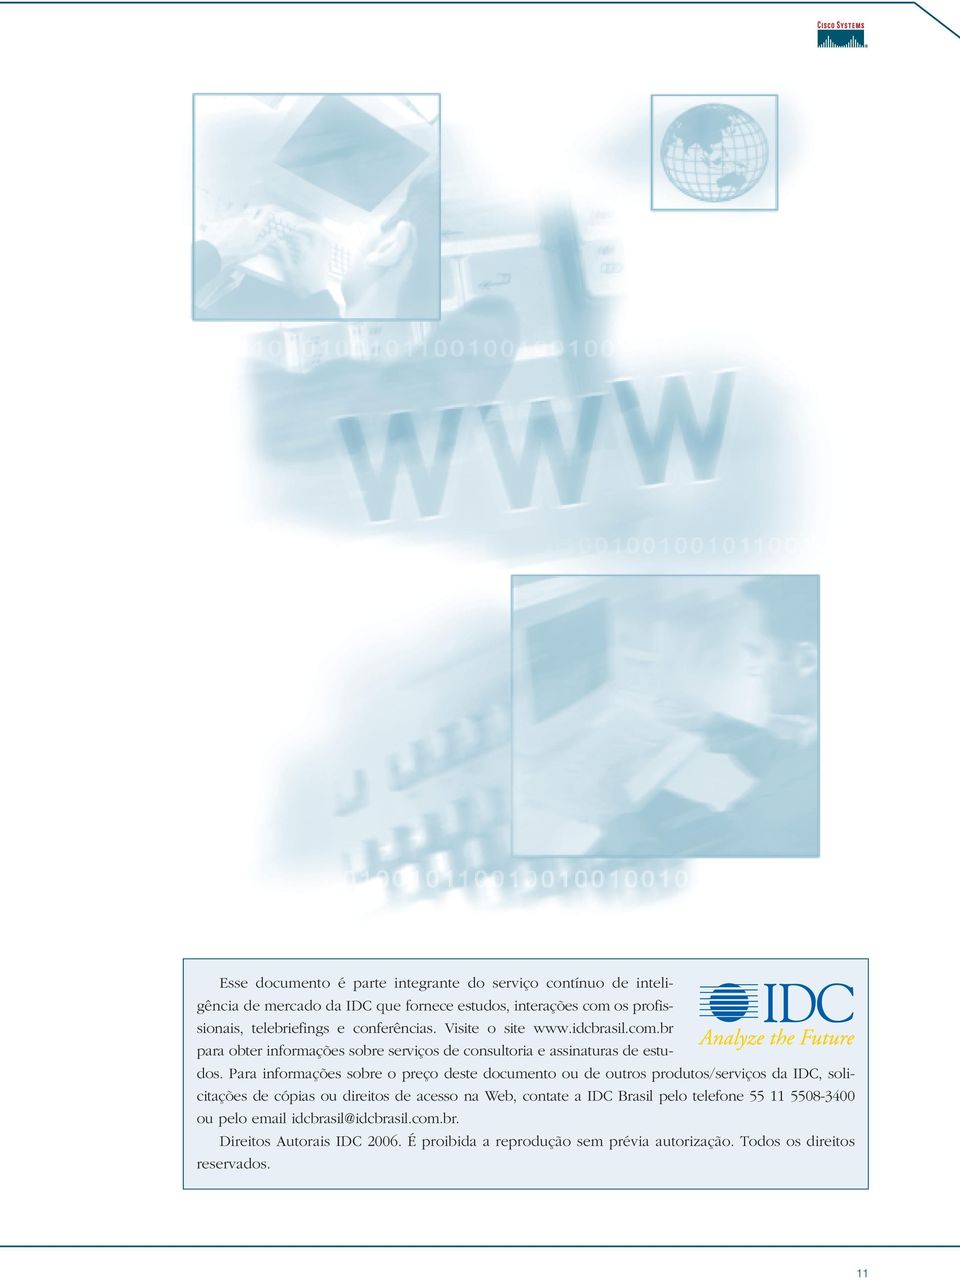 Para informações sobre o preço deste documento ou de outros produtos/serviços da IDC, solicitações de cópias ou direitos de acesso na Web, contate a IDC